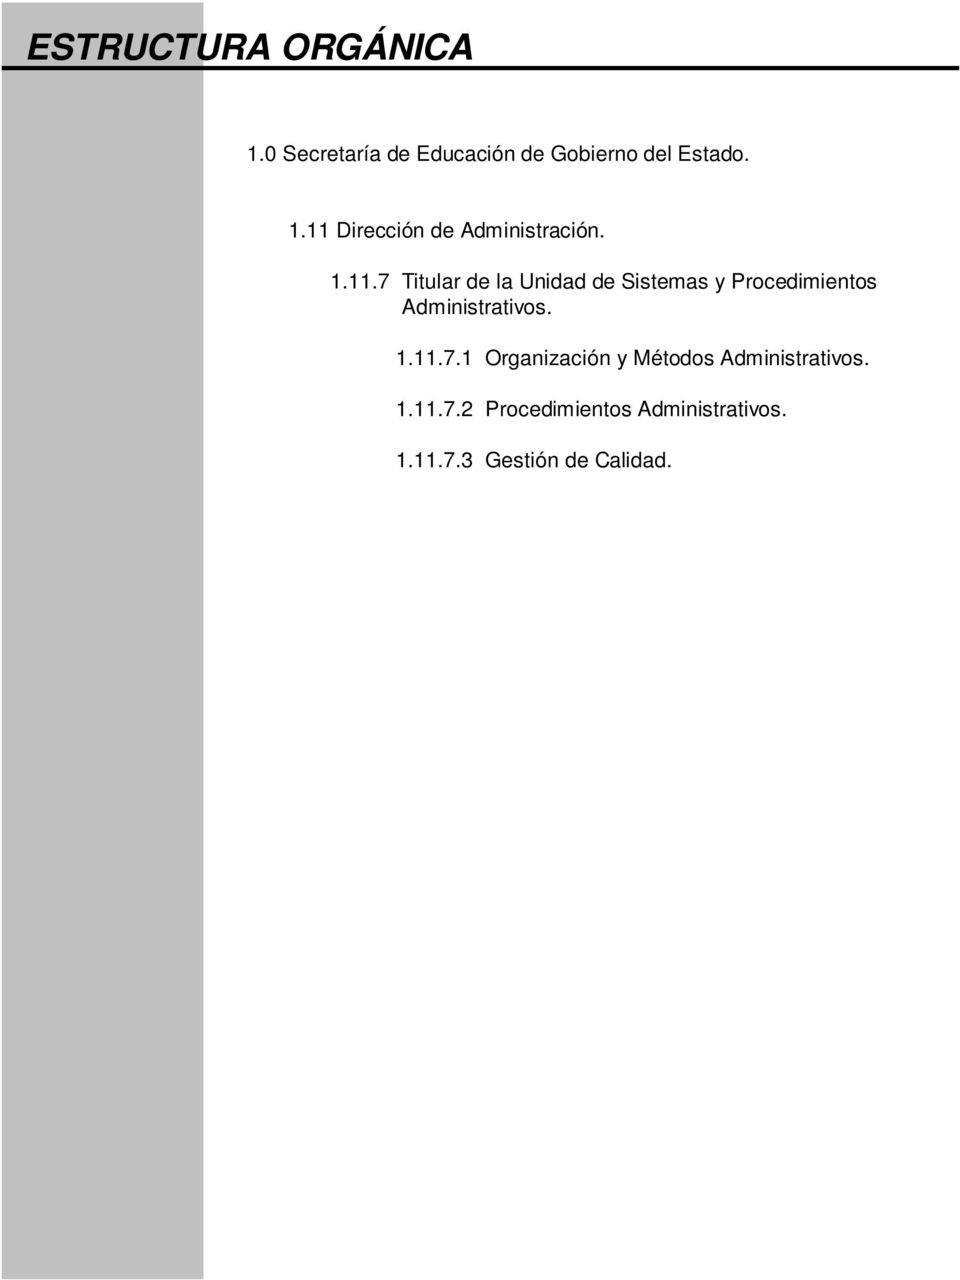 1.11.7.1 Organización y Métodos Administrativos. 1.11.7.2 Procedimientos Administrativos.